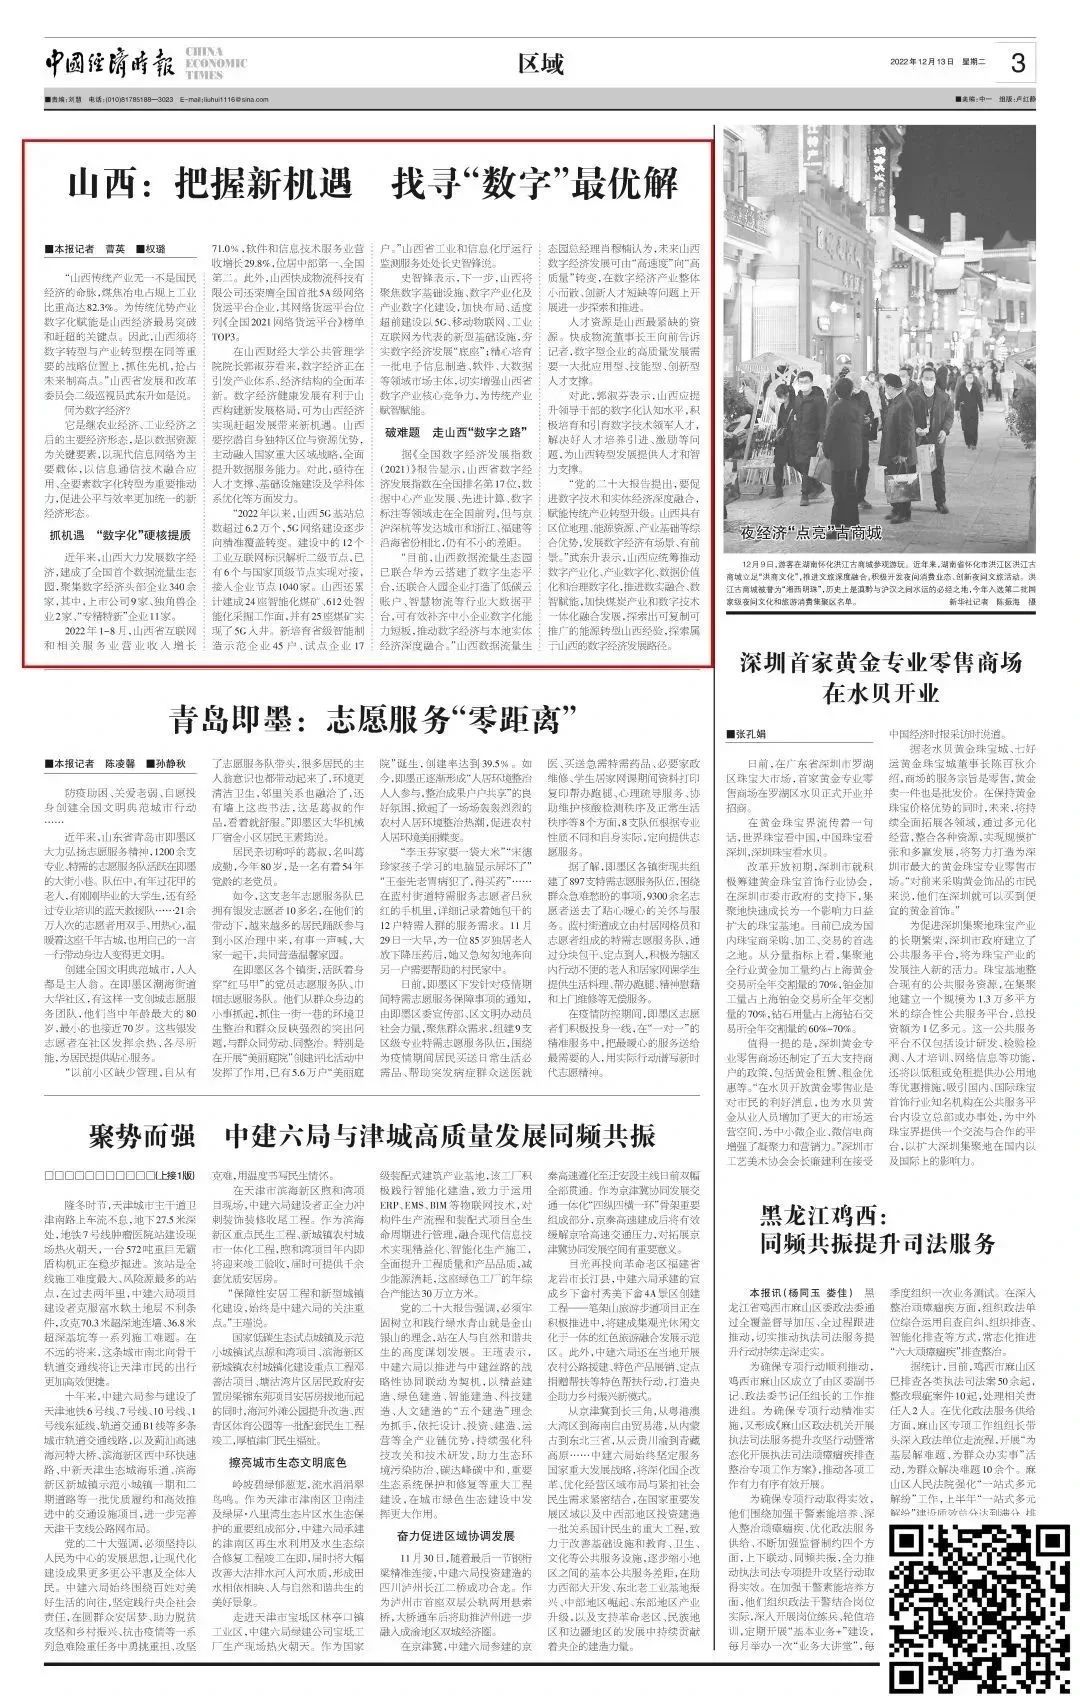 央媒报道|经济日报头版、中国经济时报集中报道生态园数字经济发展成果(图2)